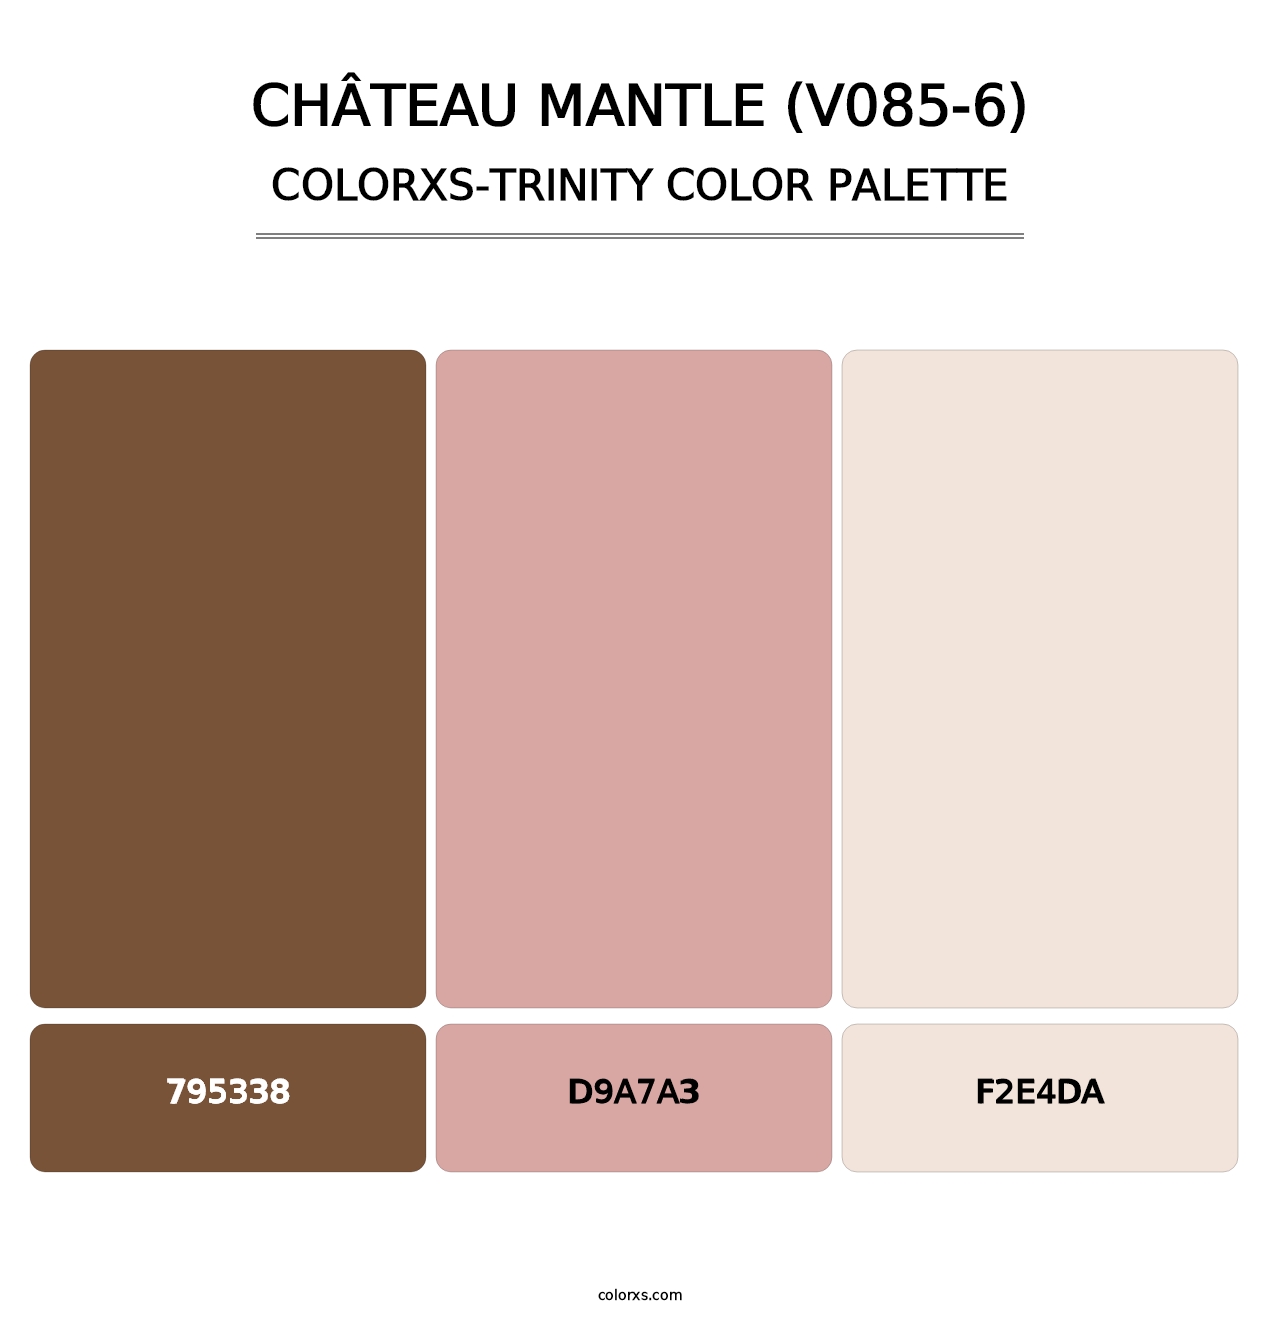 Château Mantle (V085-6) - Colorxs Trinity Palette